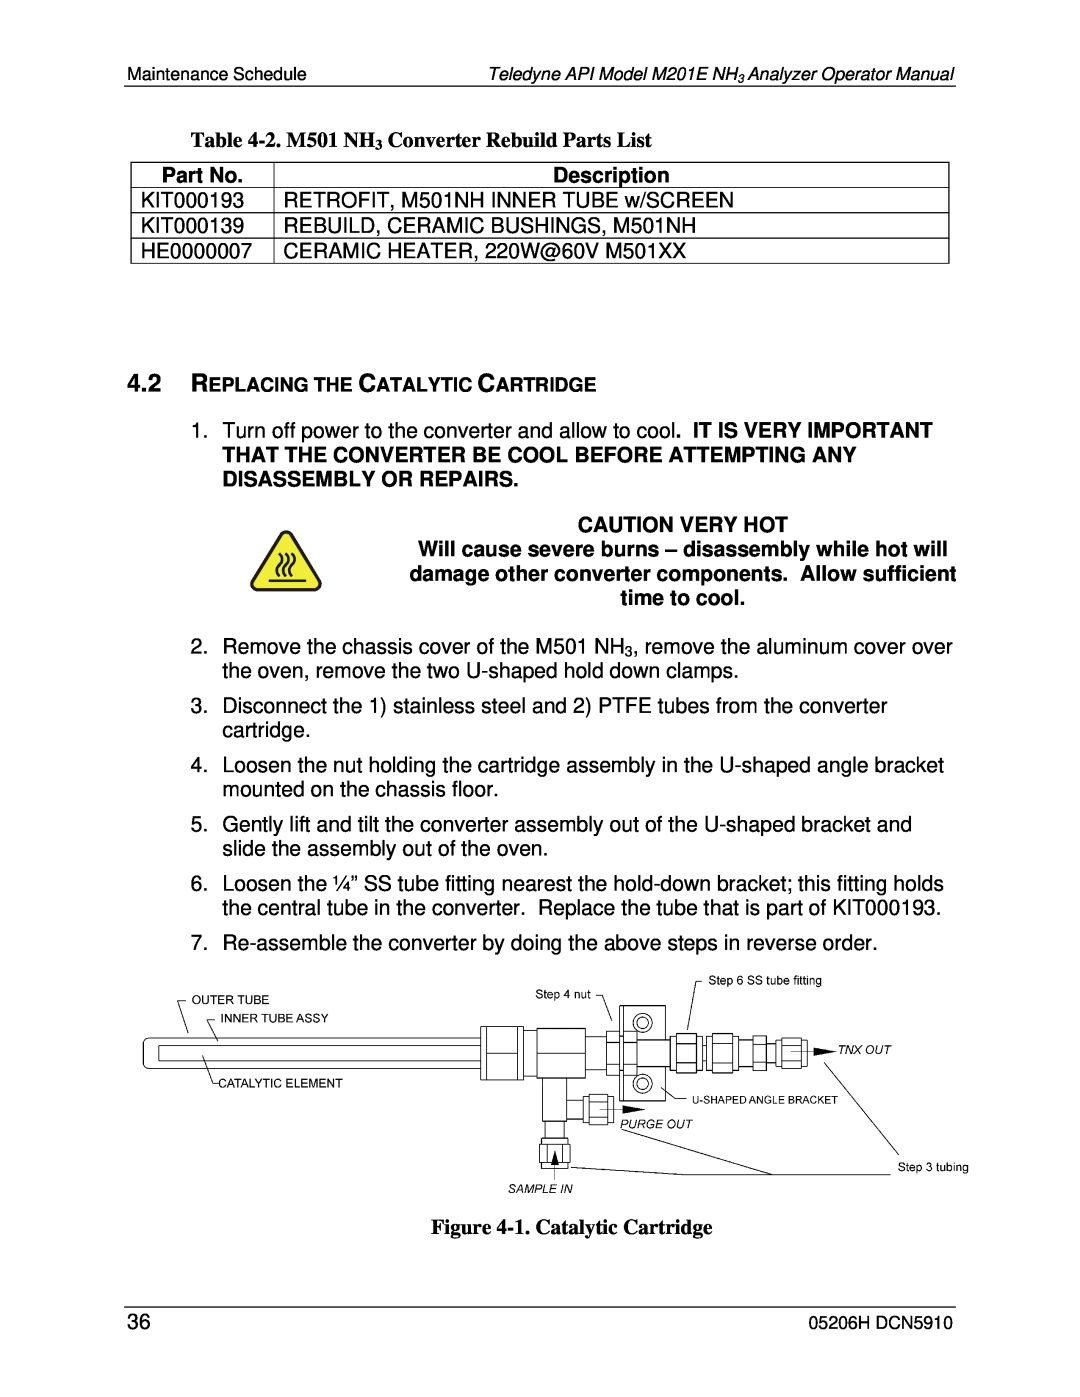 Teledyne M201E 2.M501 NH3 Converter Rebuild Parts List, Part No, Description, Caution Very Hot, 1.Catalytic Cartridge 